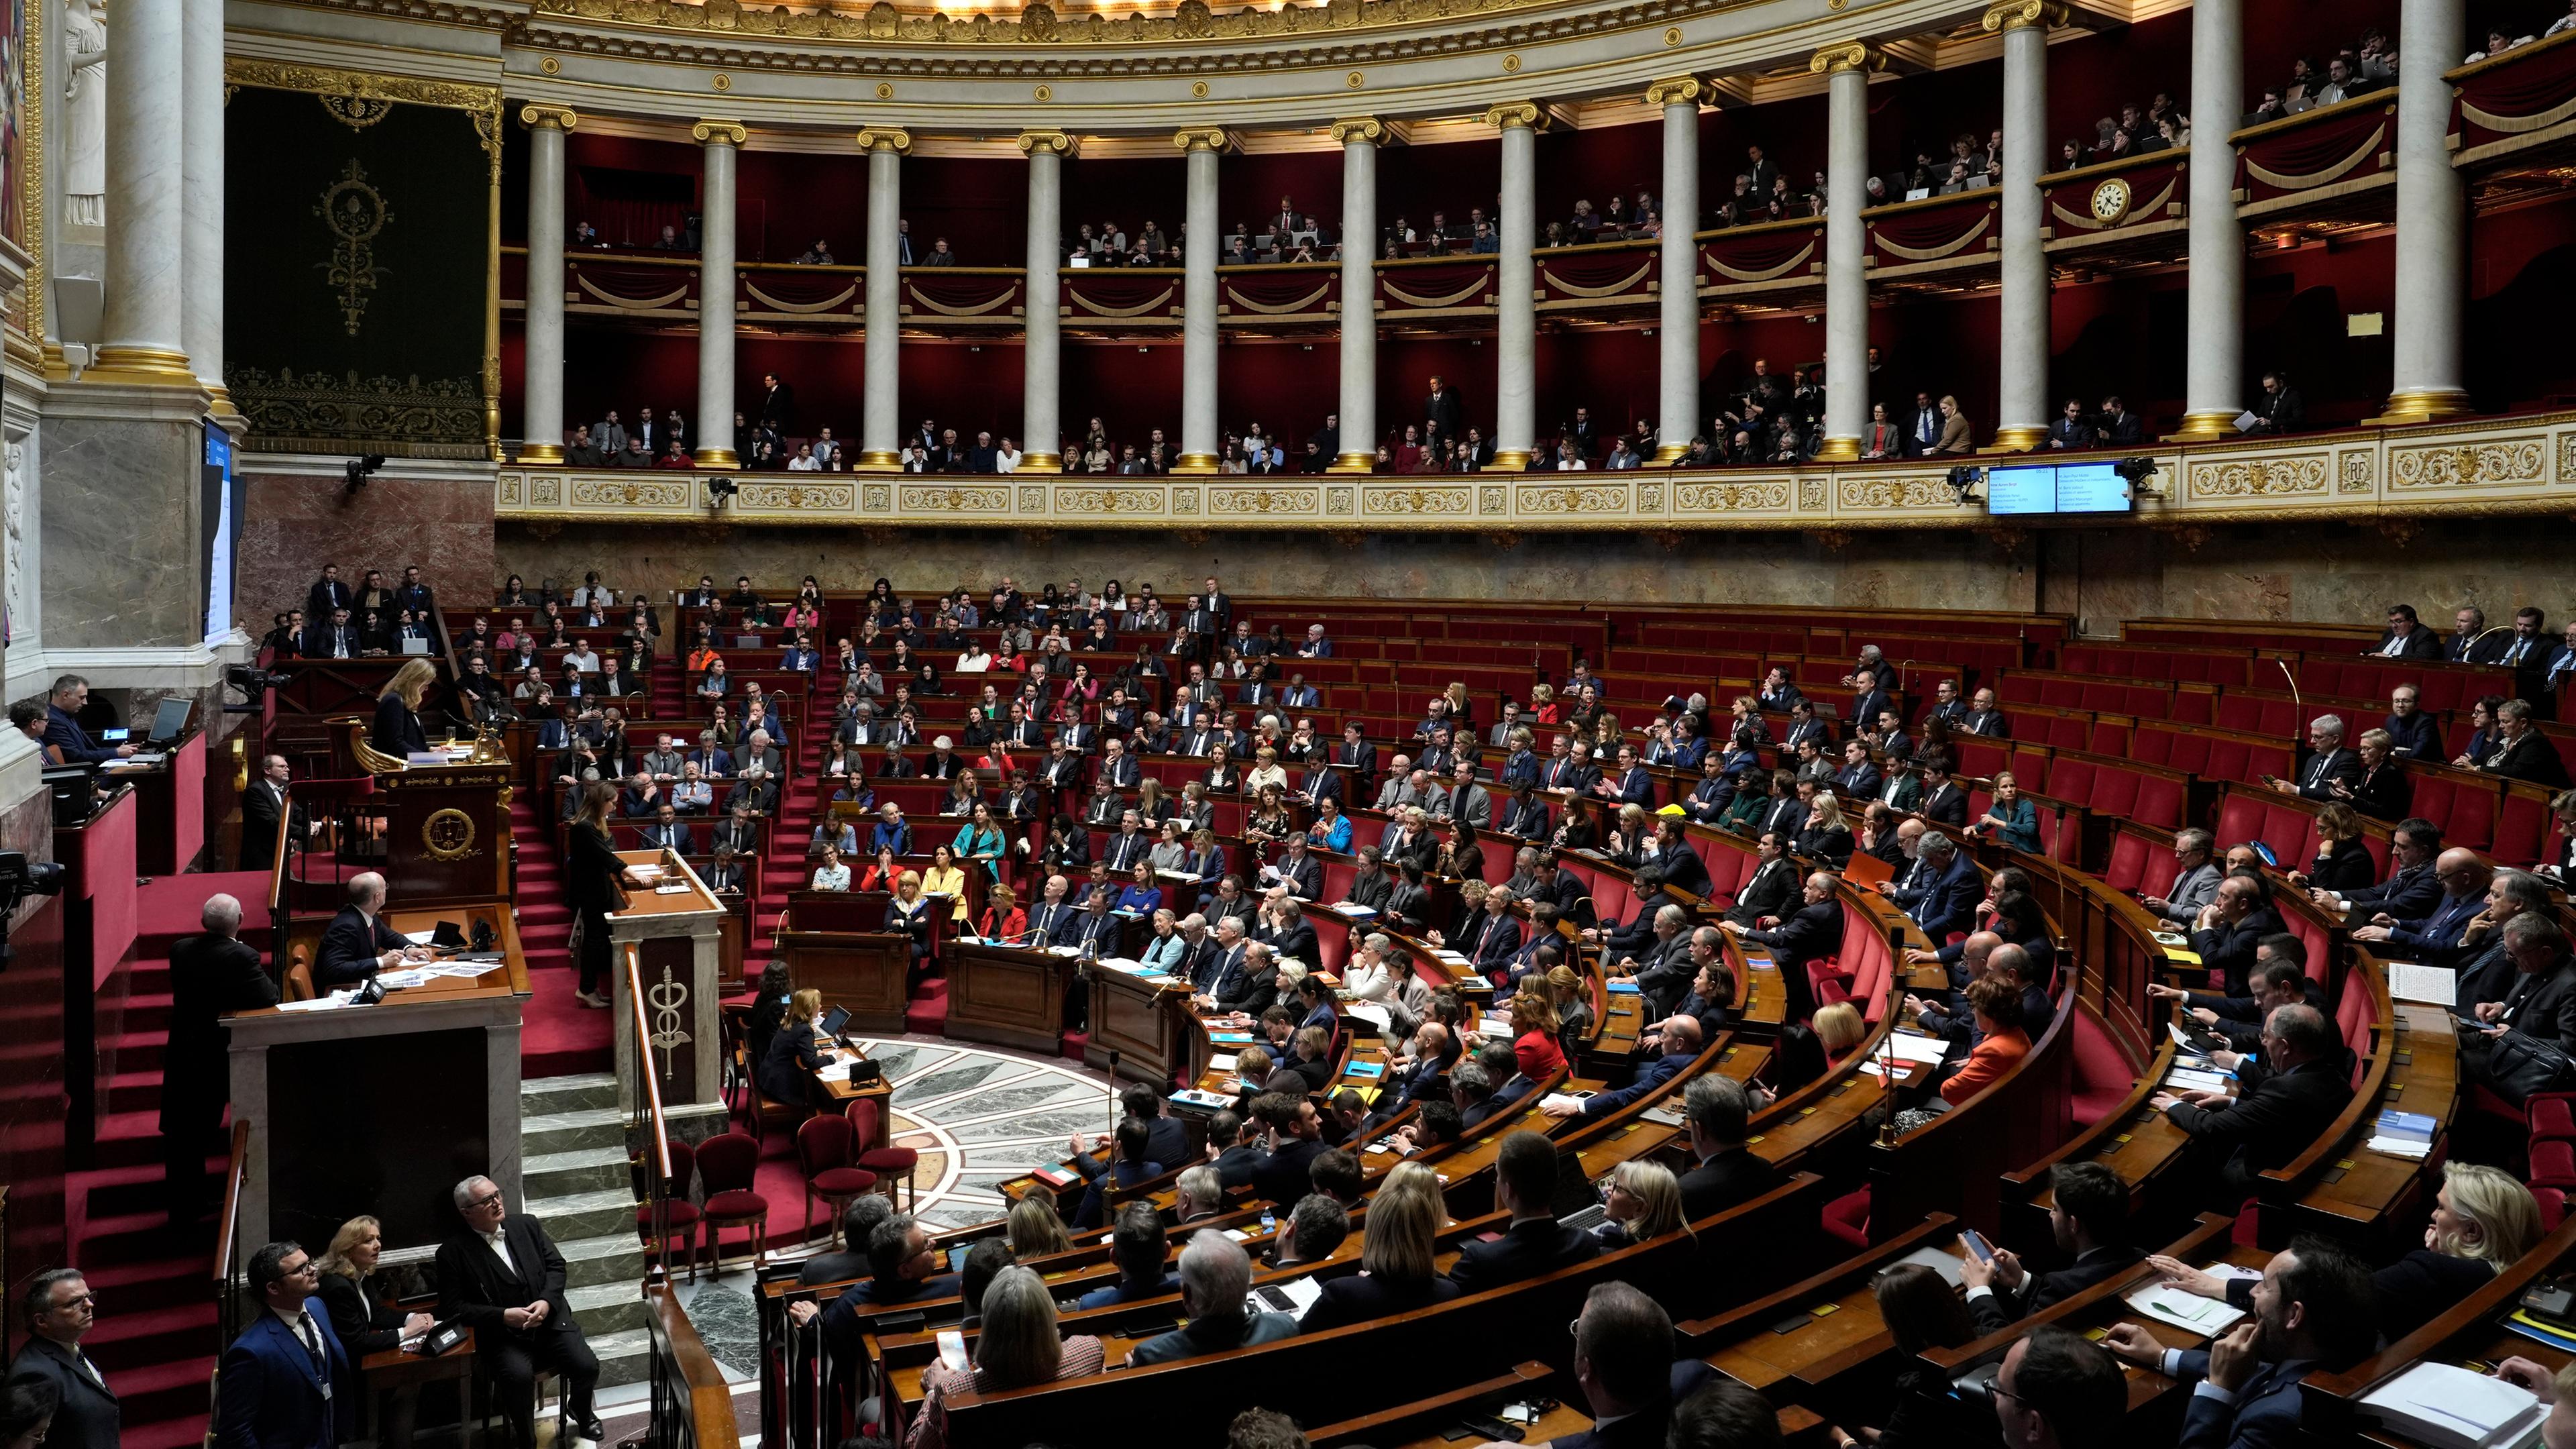 Frankreich, Paris: Französische Abgeordnete sitzen in der Nationalversammlung.